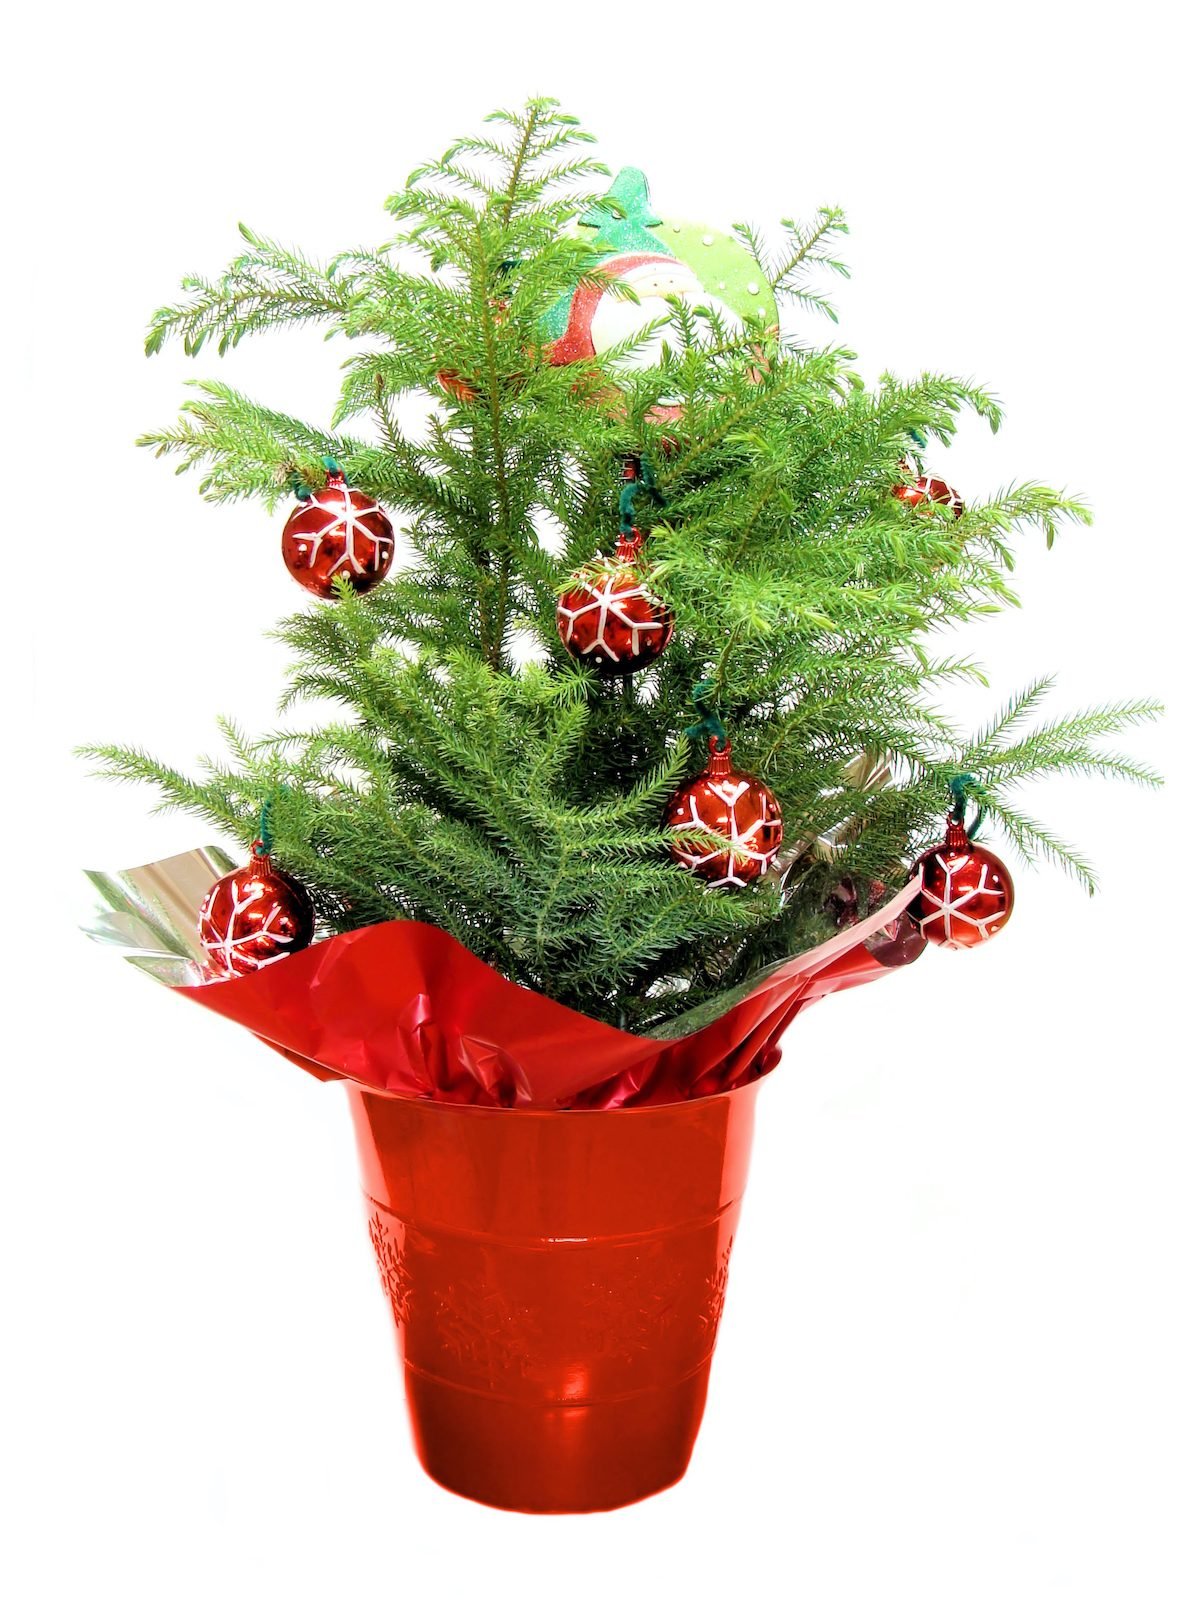 Pino de la isla de Norfolk: un adorable mini árbol de Navidad